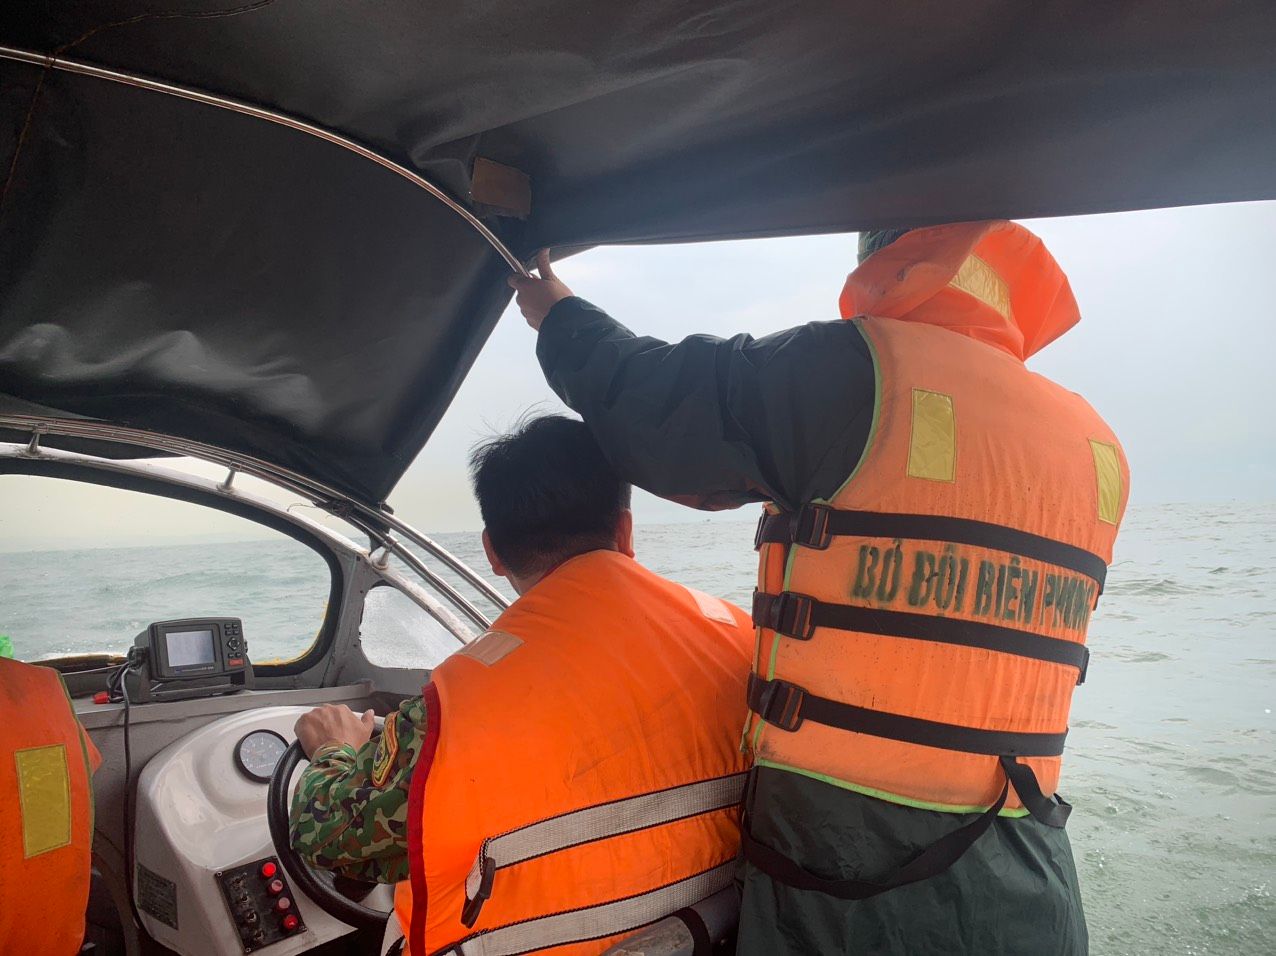 Nghệ An: Khẩn trương tìm kiếm 02 thuyền viên mất tích trên biển 